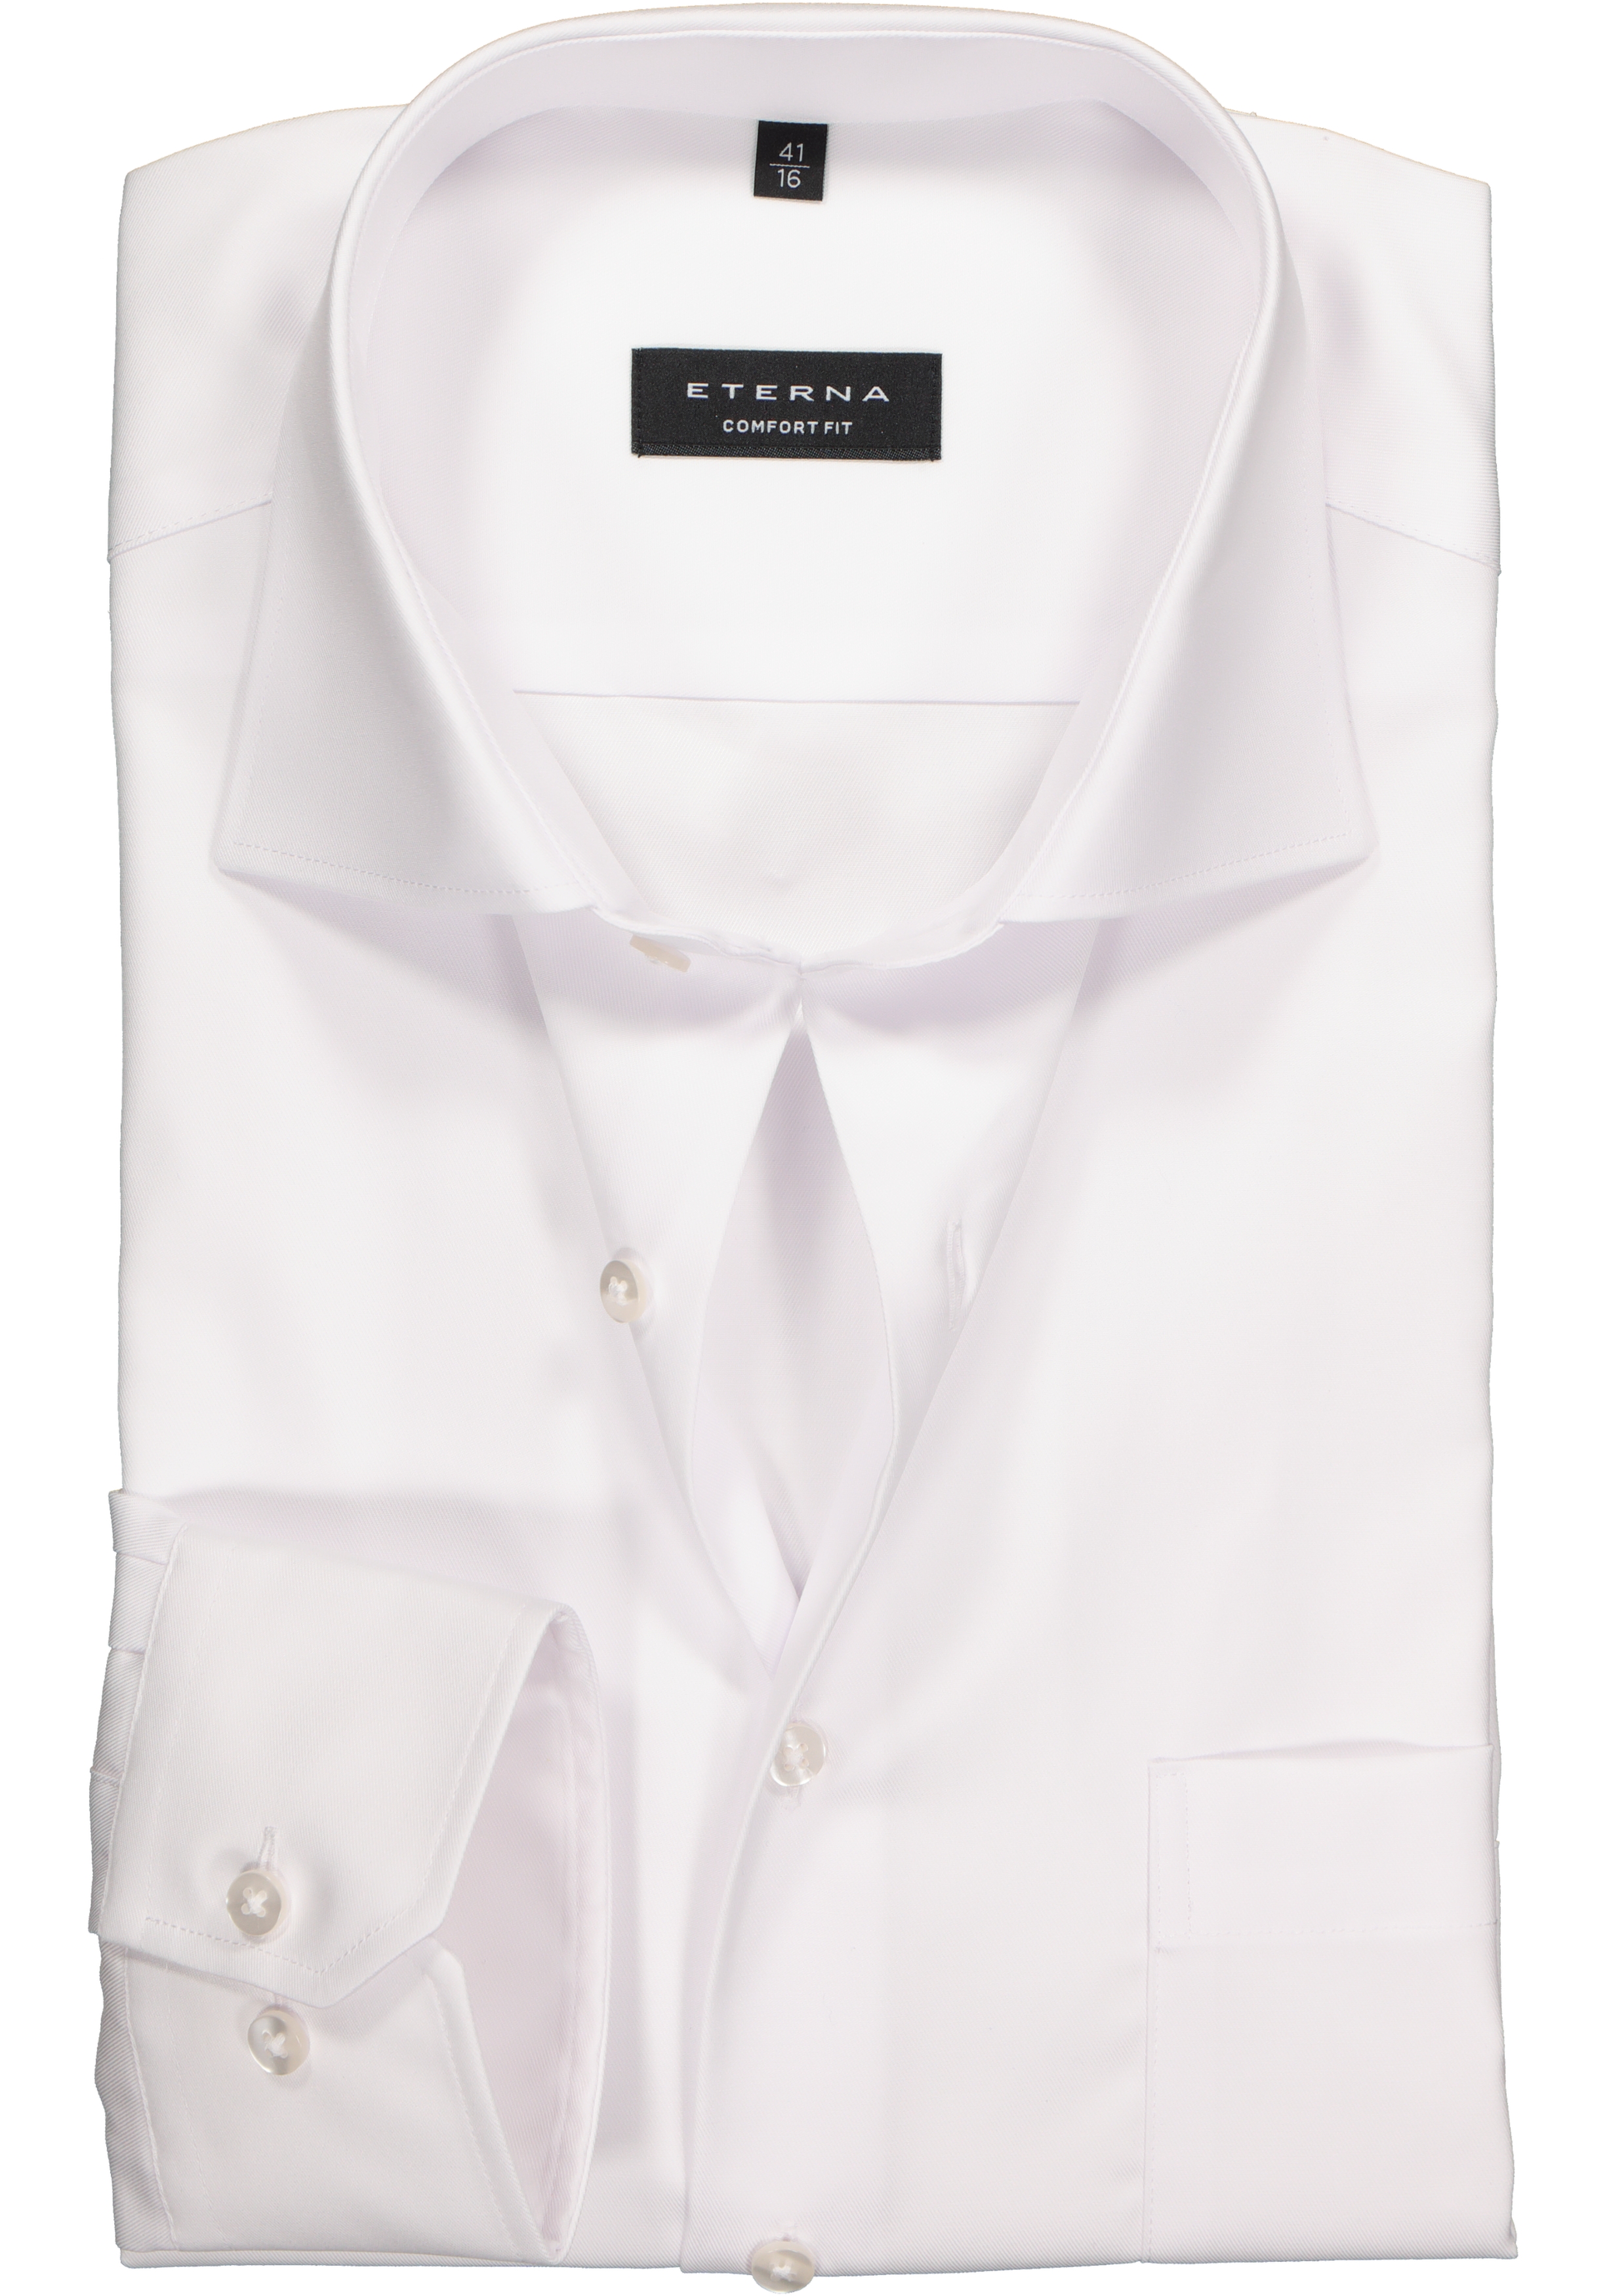 ETERNA comfort fit overhemd, mouwlengte 7, niet doorschijnend twill heren overhemd, wit